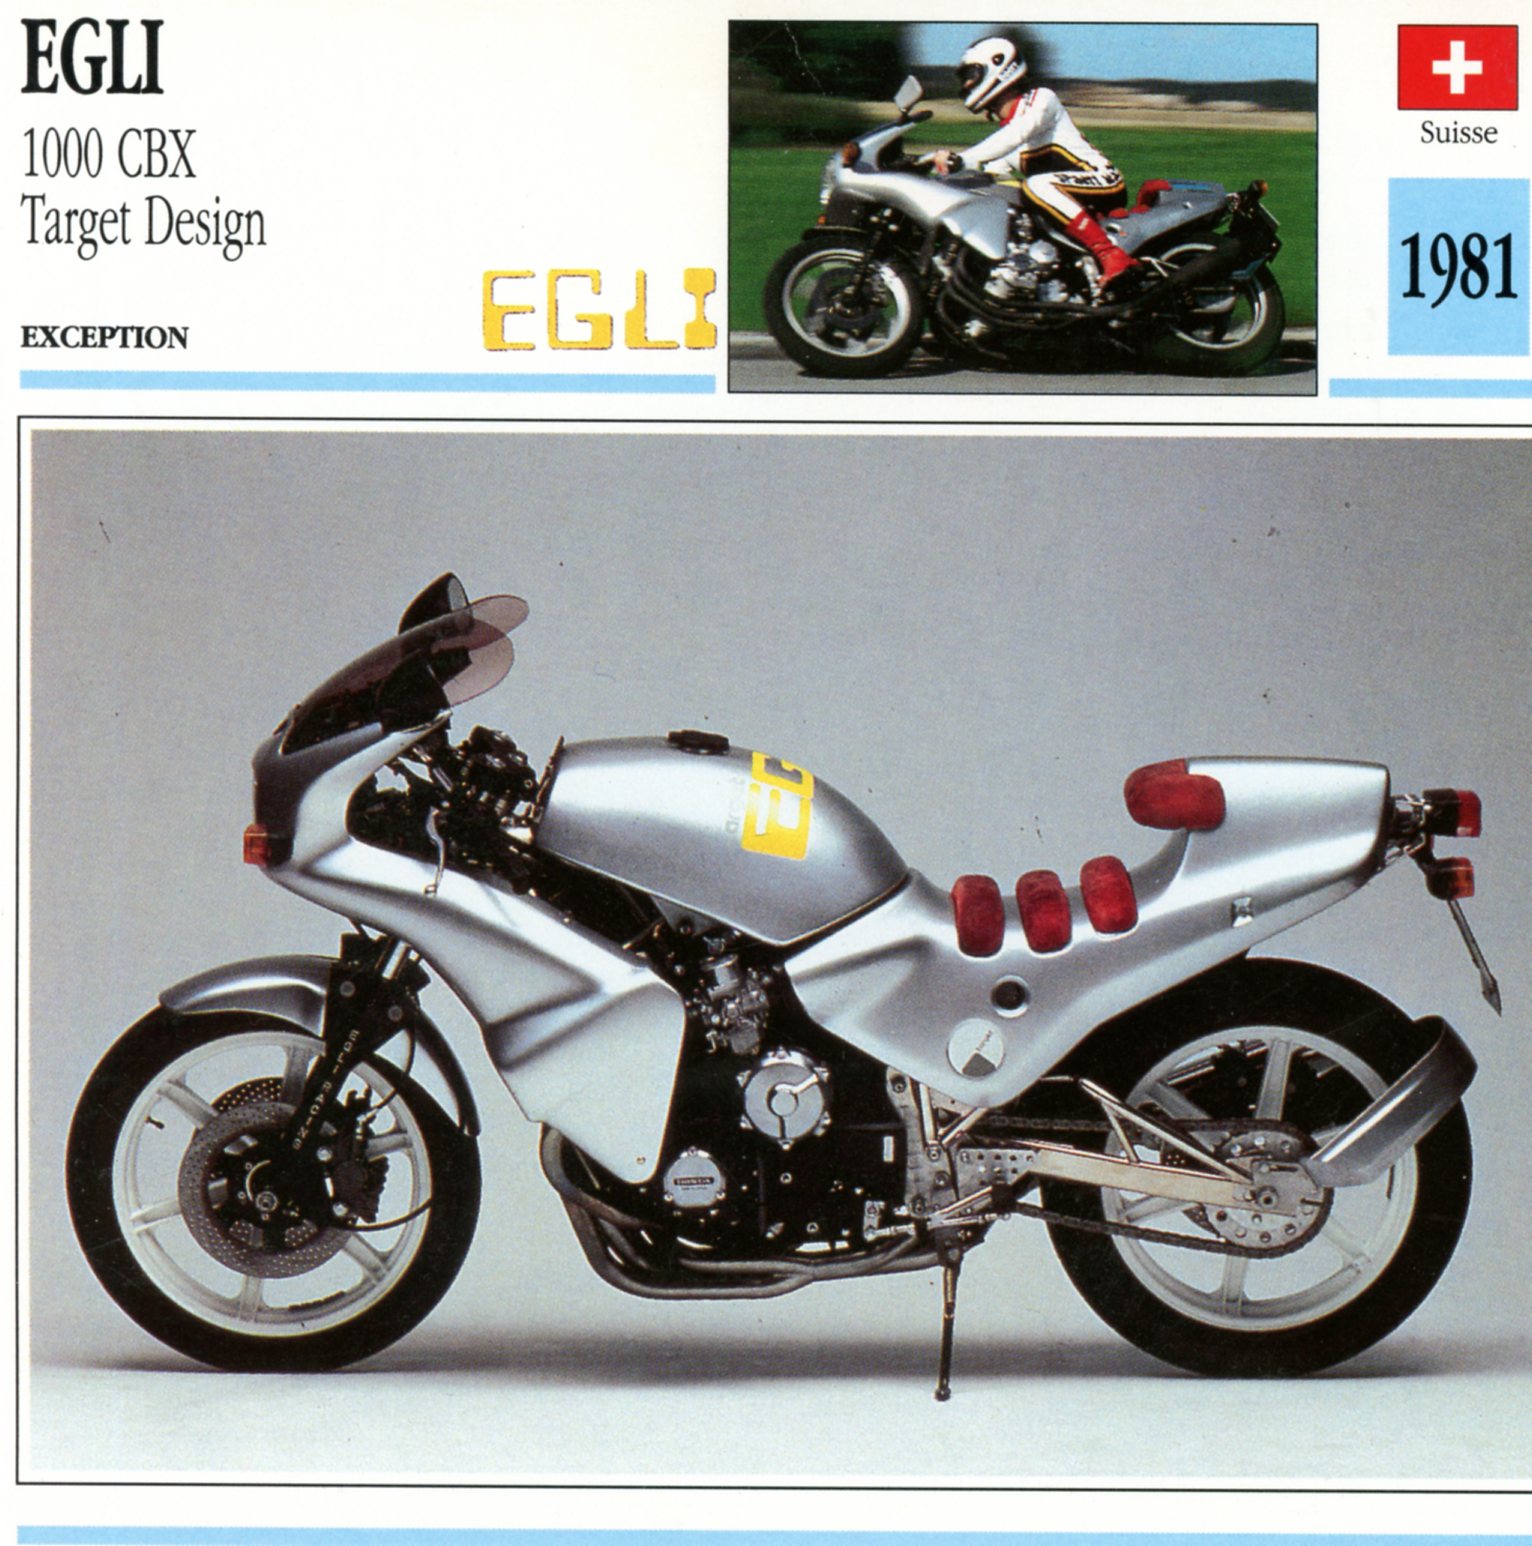 EGLI 1000 CBX TARGET DESIGN 1981 - CARTE CARD FICHE MOTO CARACTERISTIQUES